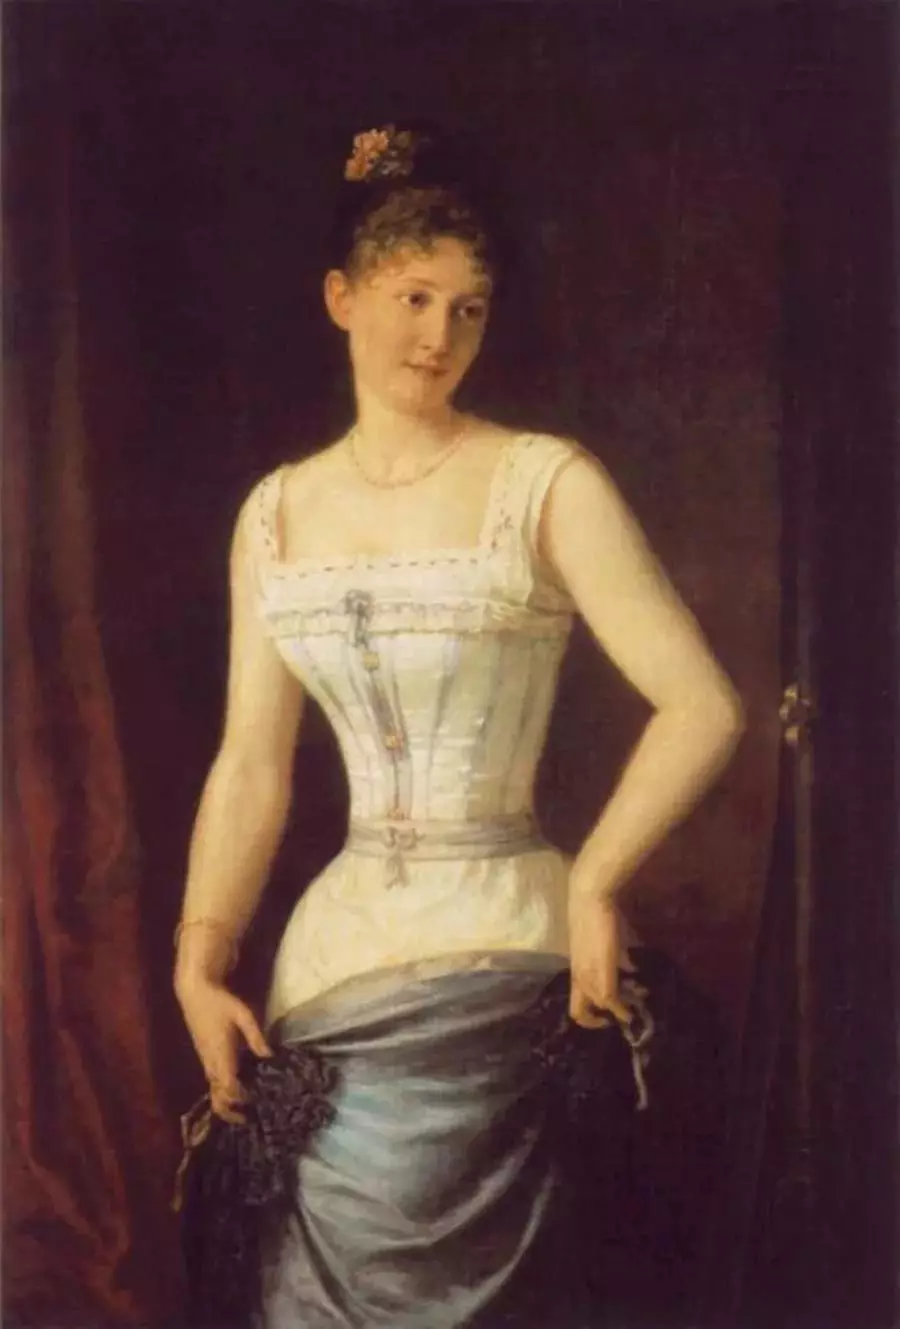 Corset (128 ಫೋಟೋಗಳು): ಸ್ತನ ಮತ್ತು ಕ್ರೀಡೆಗಳು, ಕಪ್ಪು ಮತ್ತು ಇತರ ಬಣ್ಣದ ಅಡಿಯಲ್ಲಿ ಮಾದರಿಗಳು, ದೊಡ್ಡ ಗಾತ್ರದ ಮಹಿಳೆಯರಿಗೆ, ದೈನಂದಿನ ದೇಹ corset 14933_6